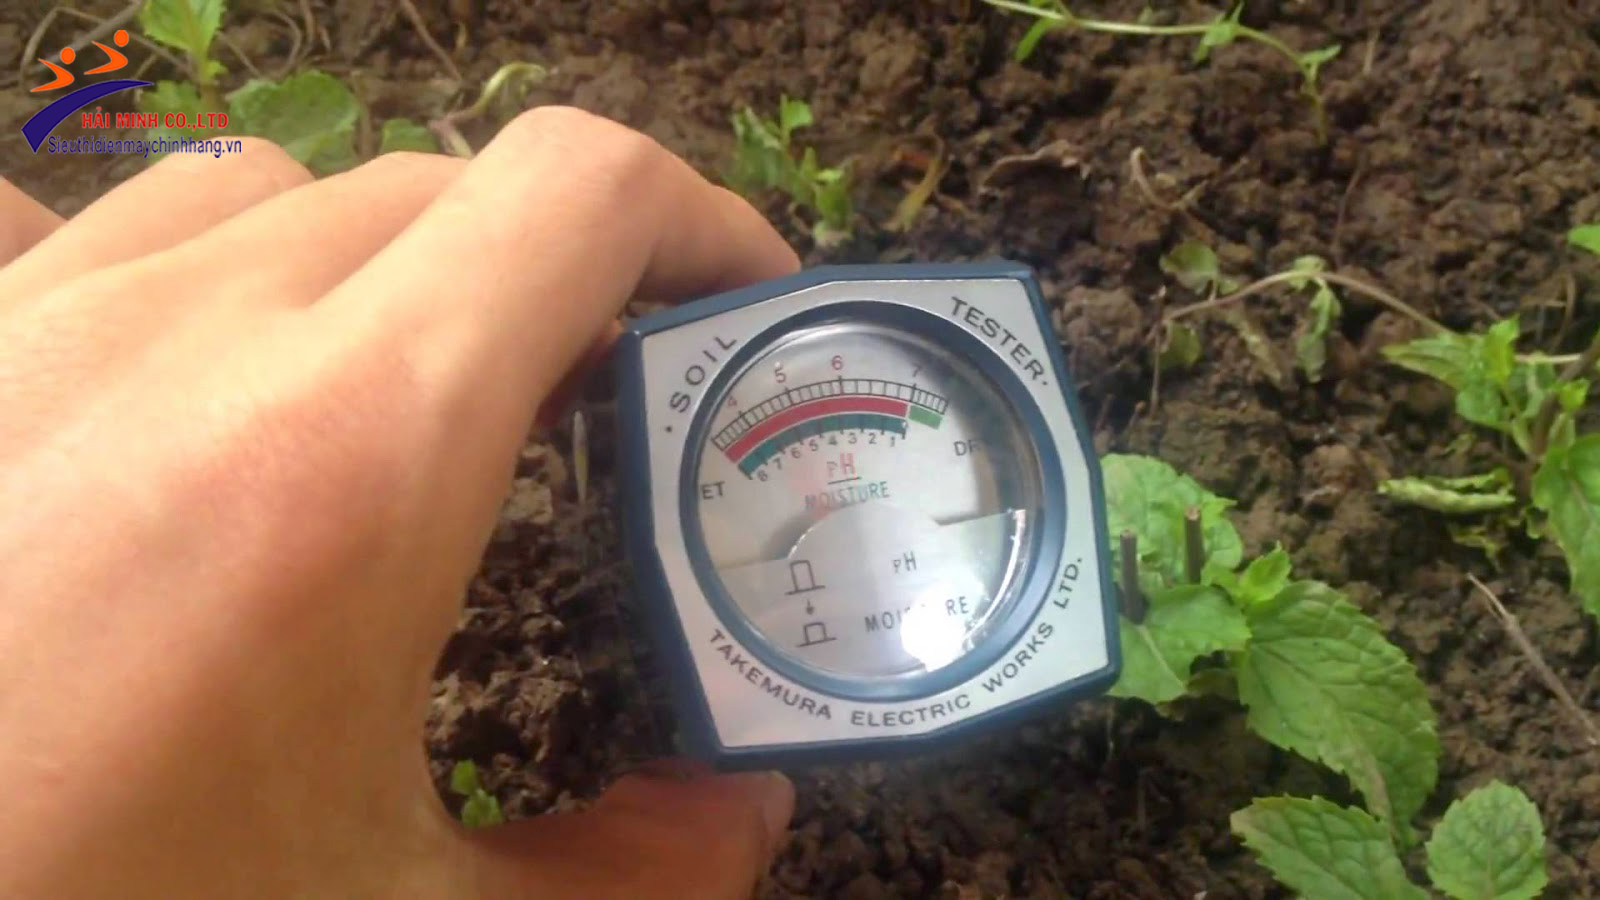 5 máy đo độ ẩm trong đất chất lượng nhất hiện nay 